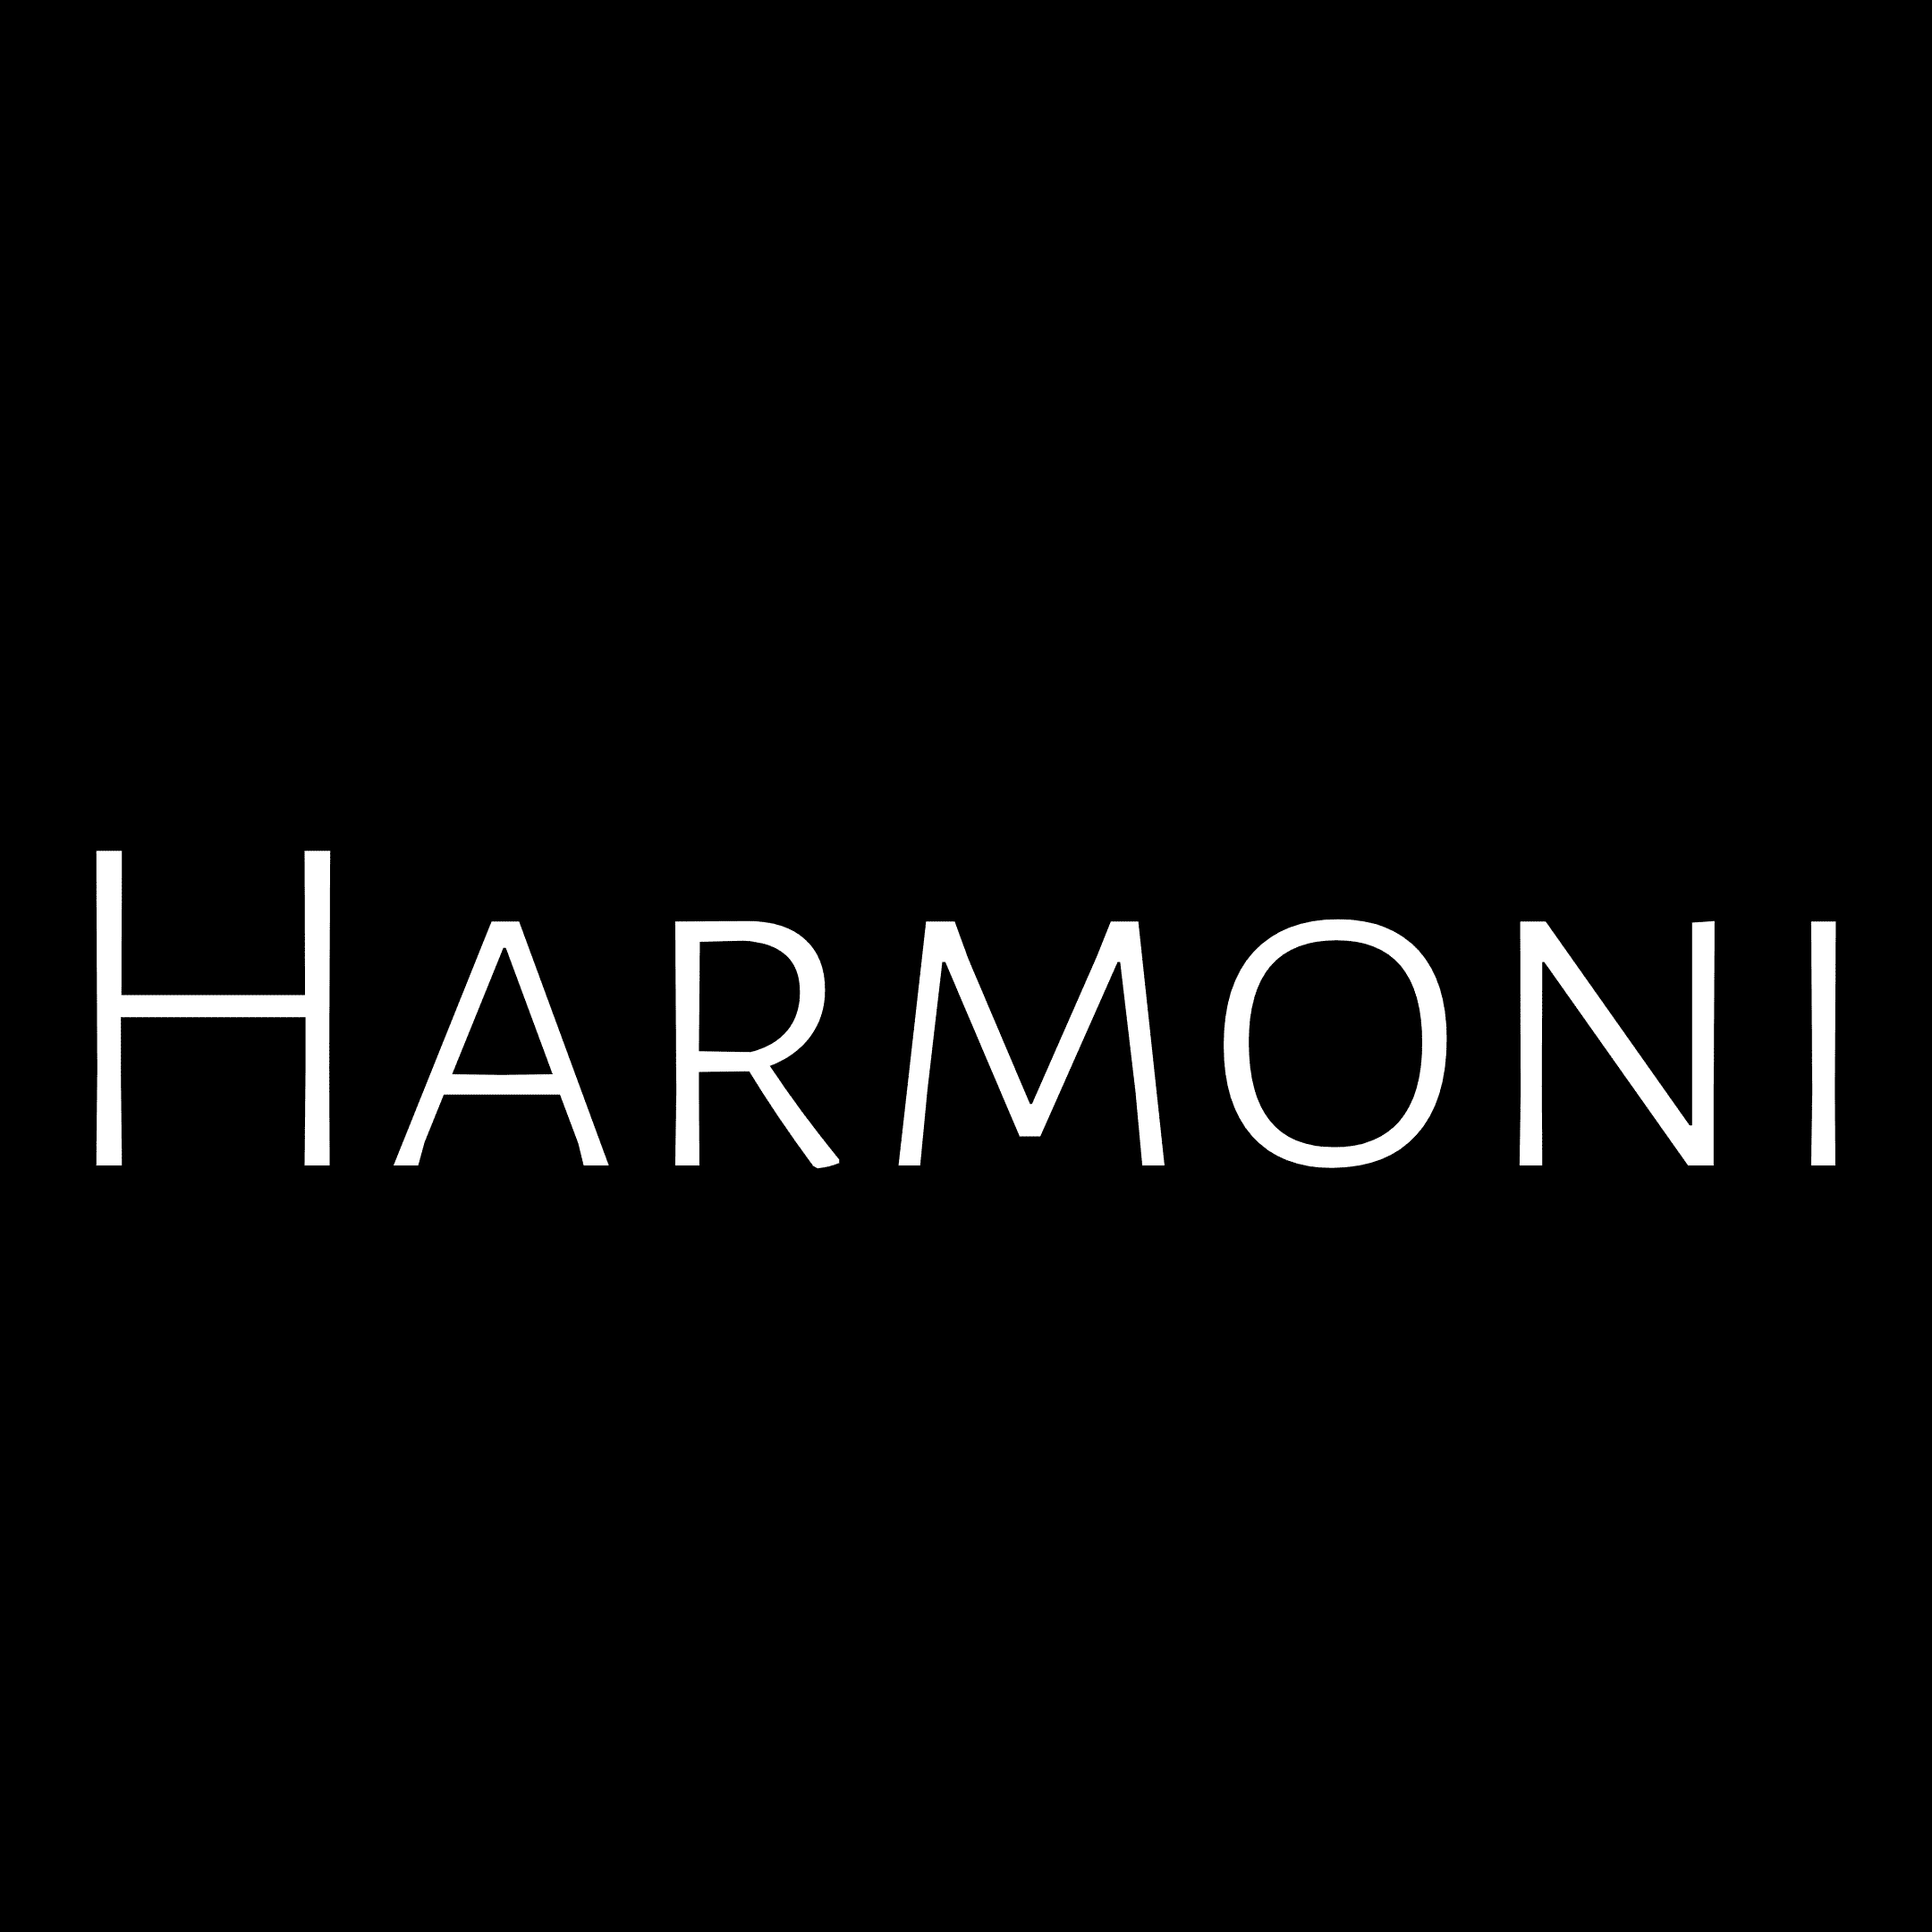 Use Harmoni